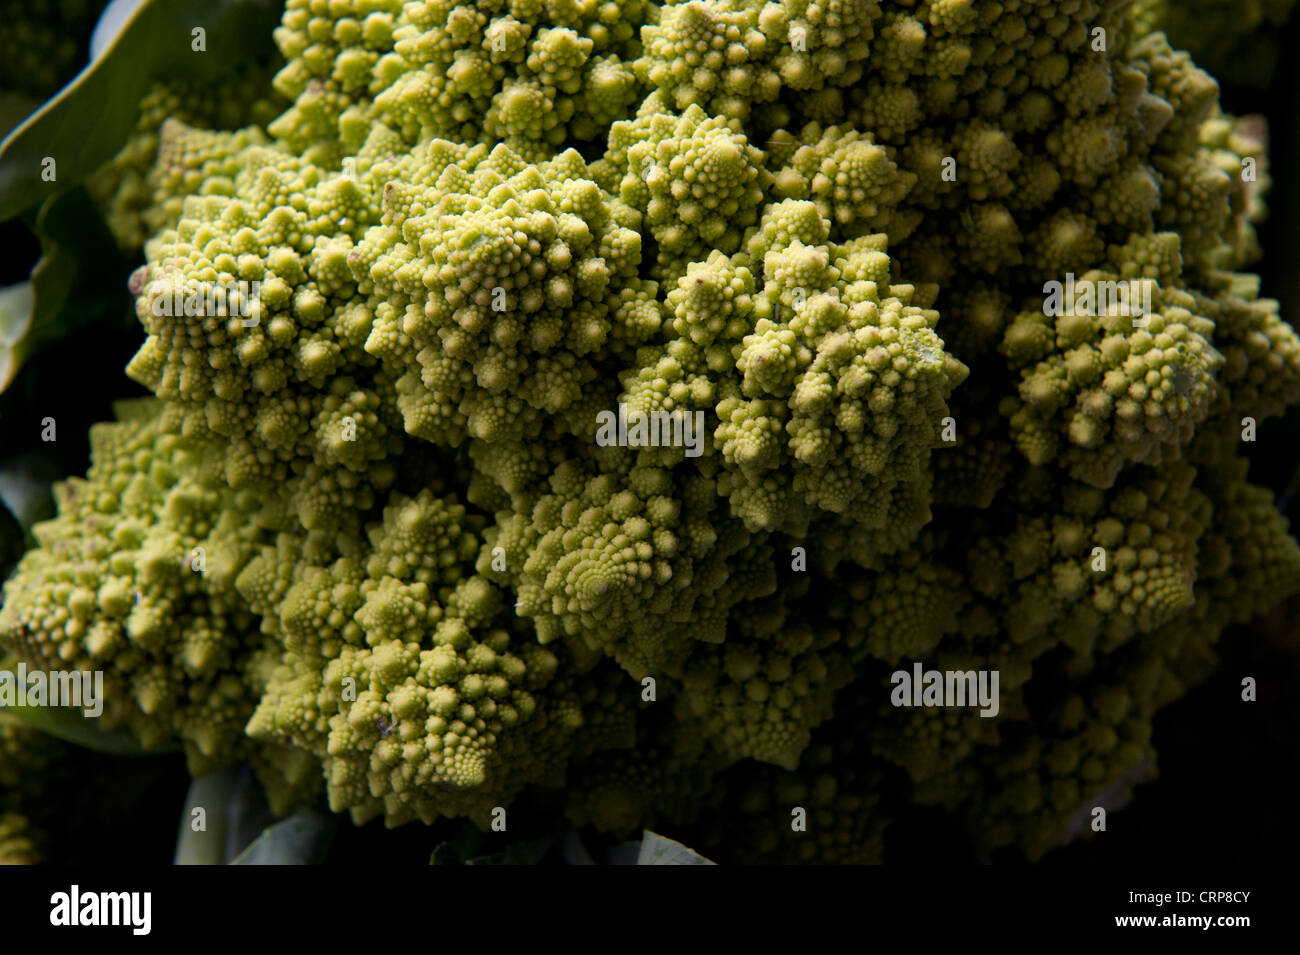 Cavolo broccolo Romanesco (Brassica oleracea L. var. italica), un segno distintivo di cavolo romano. Foto Stock